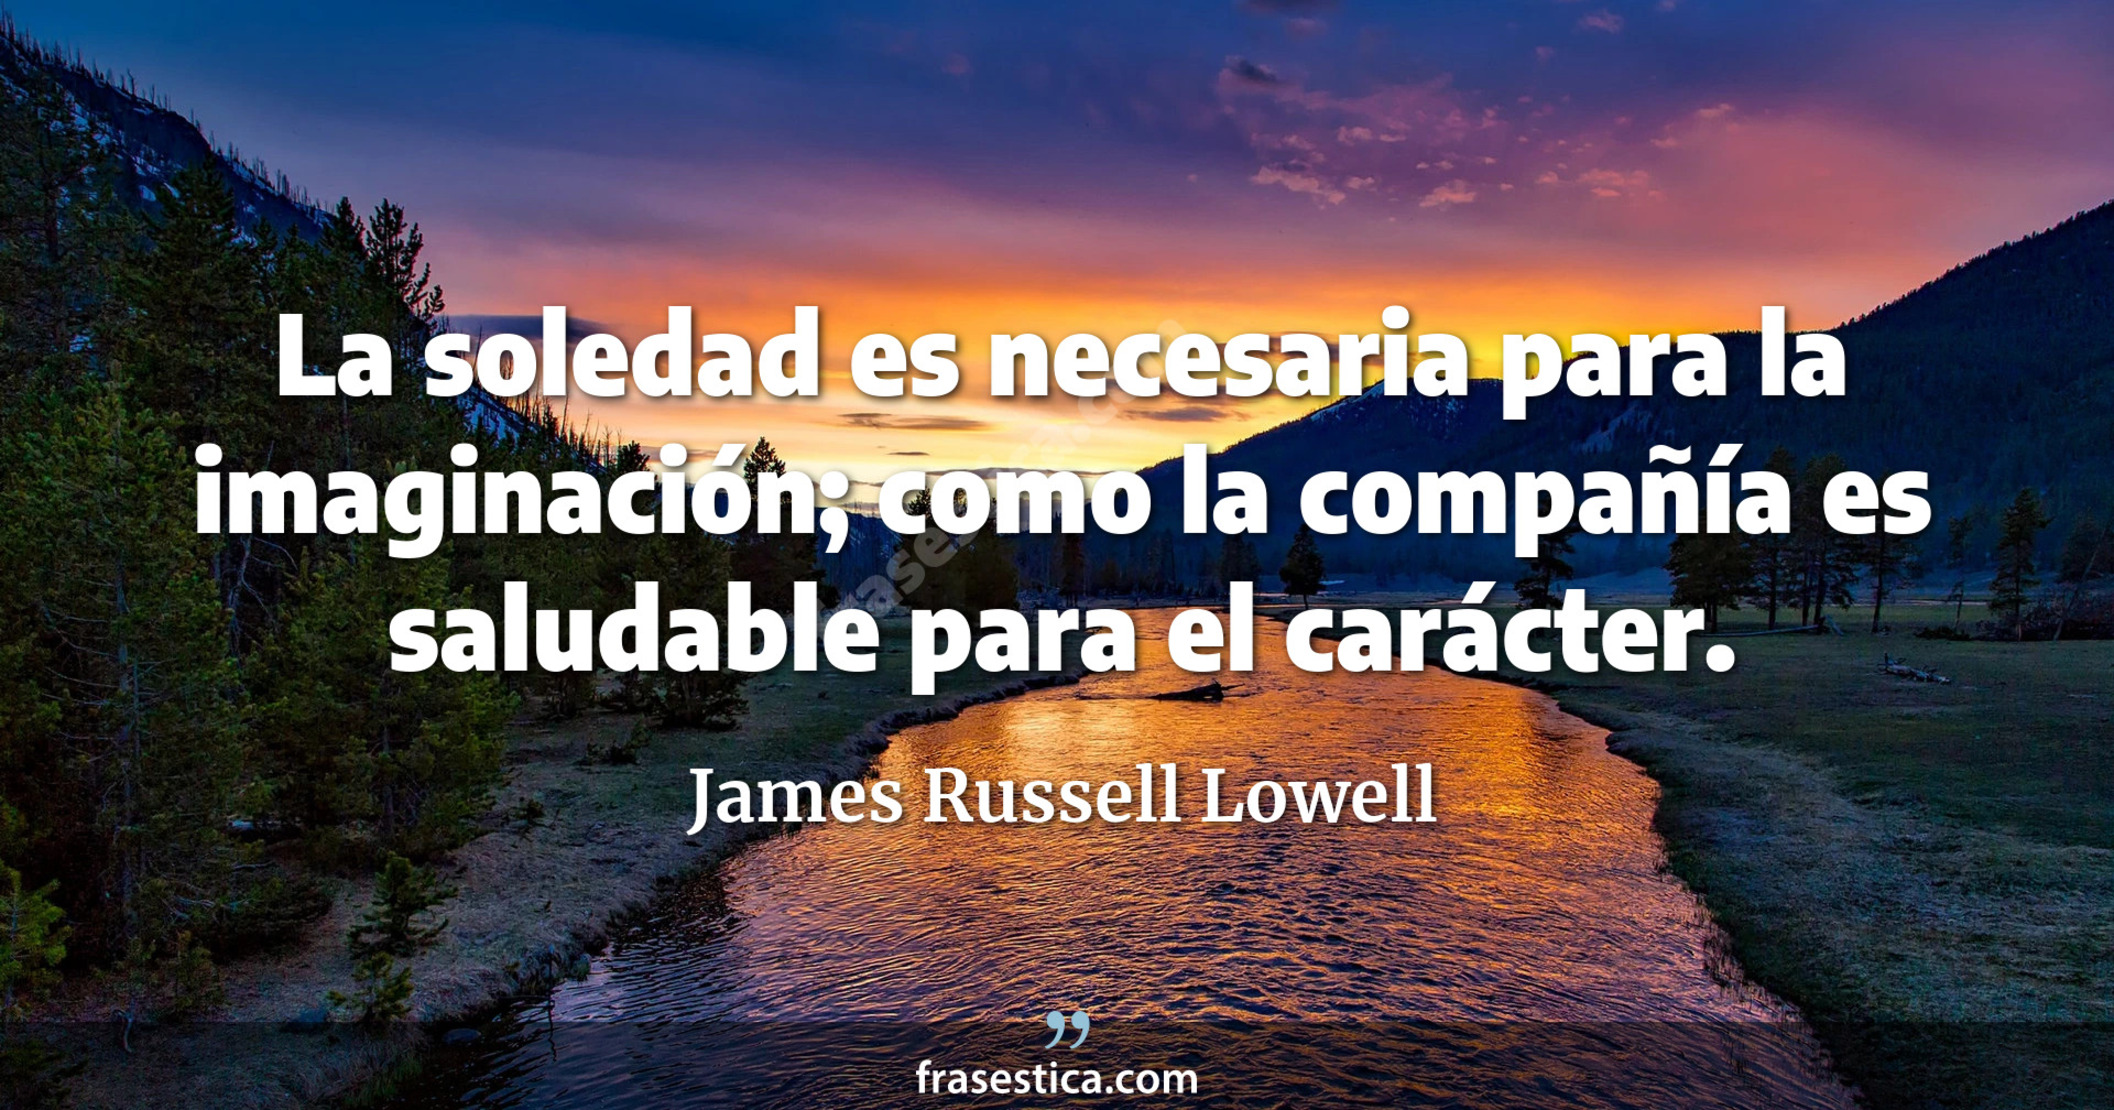 La soledad es necesaria para la imaginación; como la compañía es saludable para el carácter. - James Russell Lowell